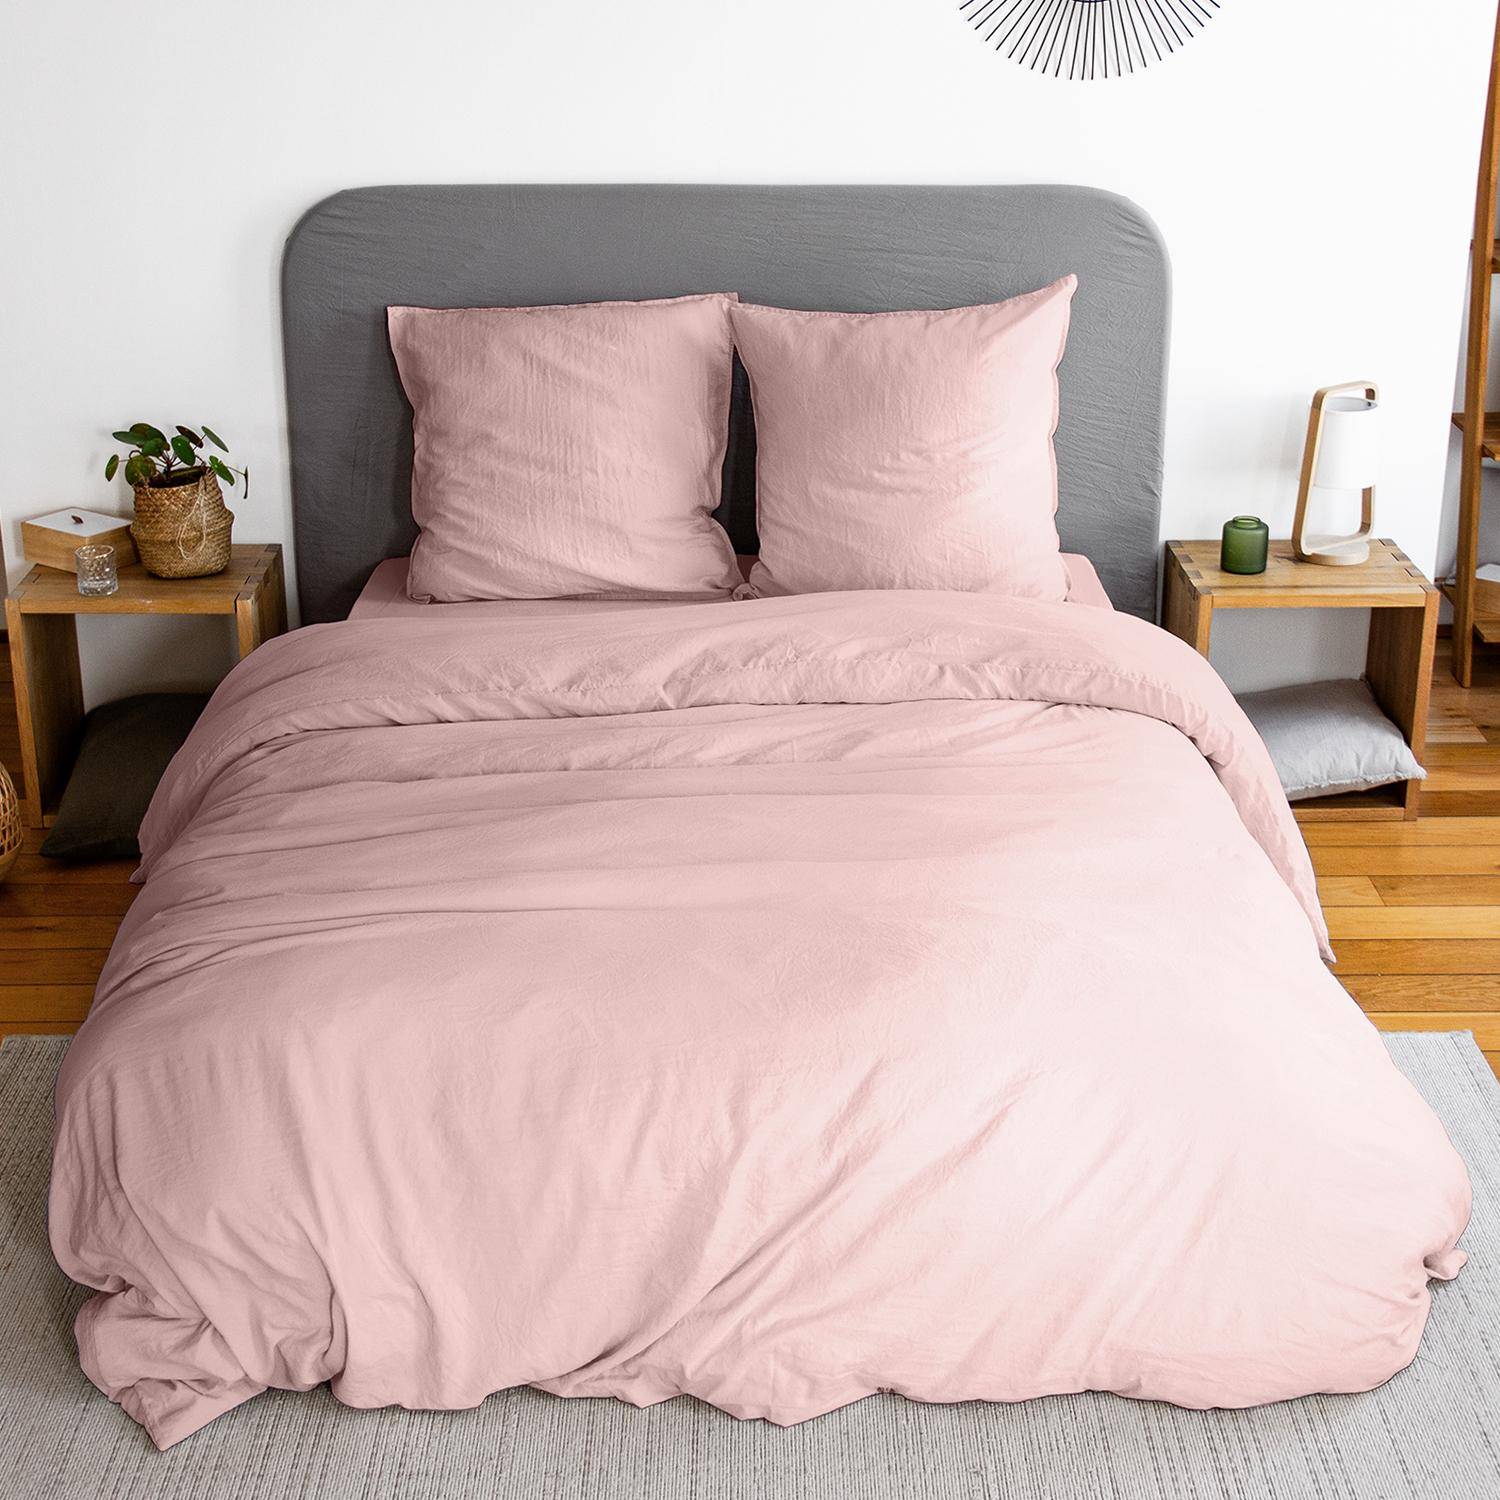 Parure de lit en microfibre lavée, rose poudré, 240 x 220cm pour lit 2 places avec 1 housse de couette et 2 taies d'oreillers Photo3